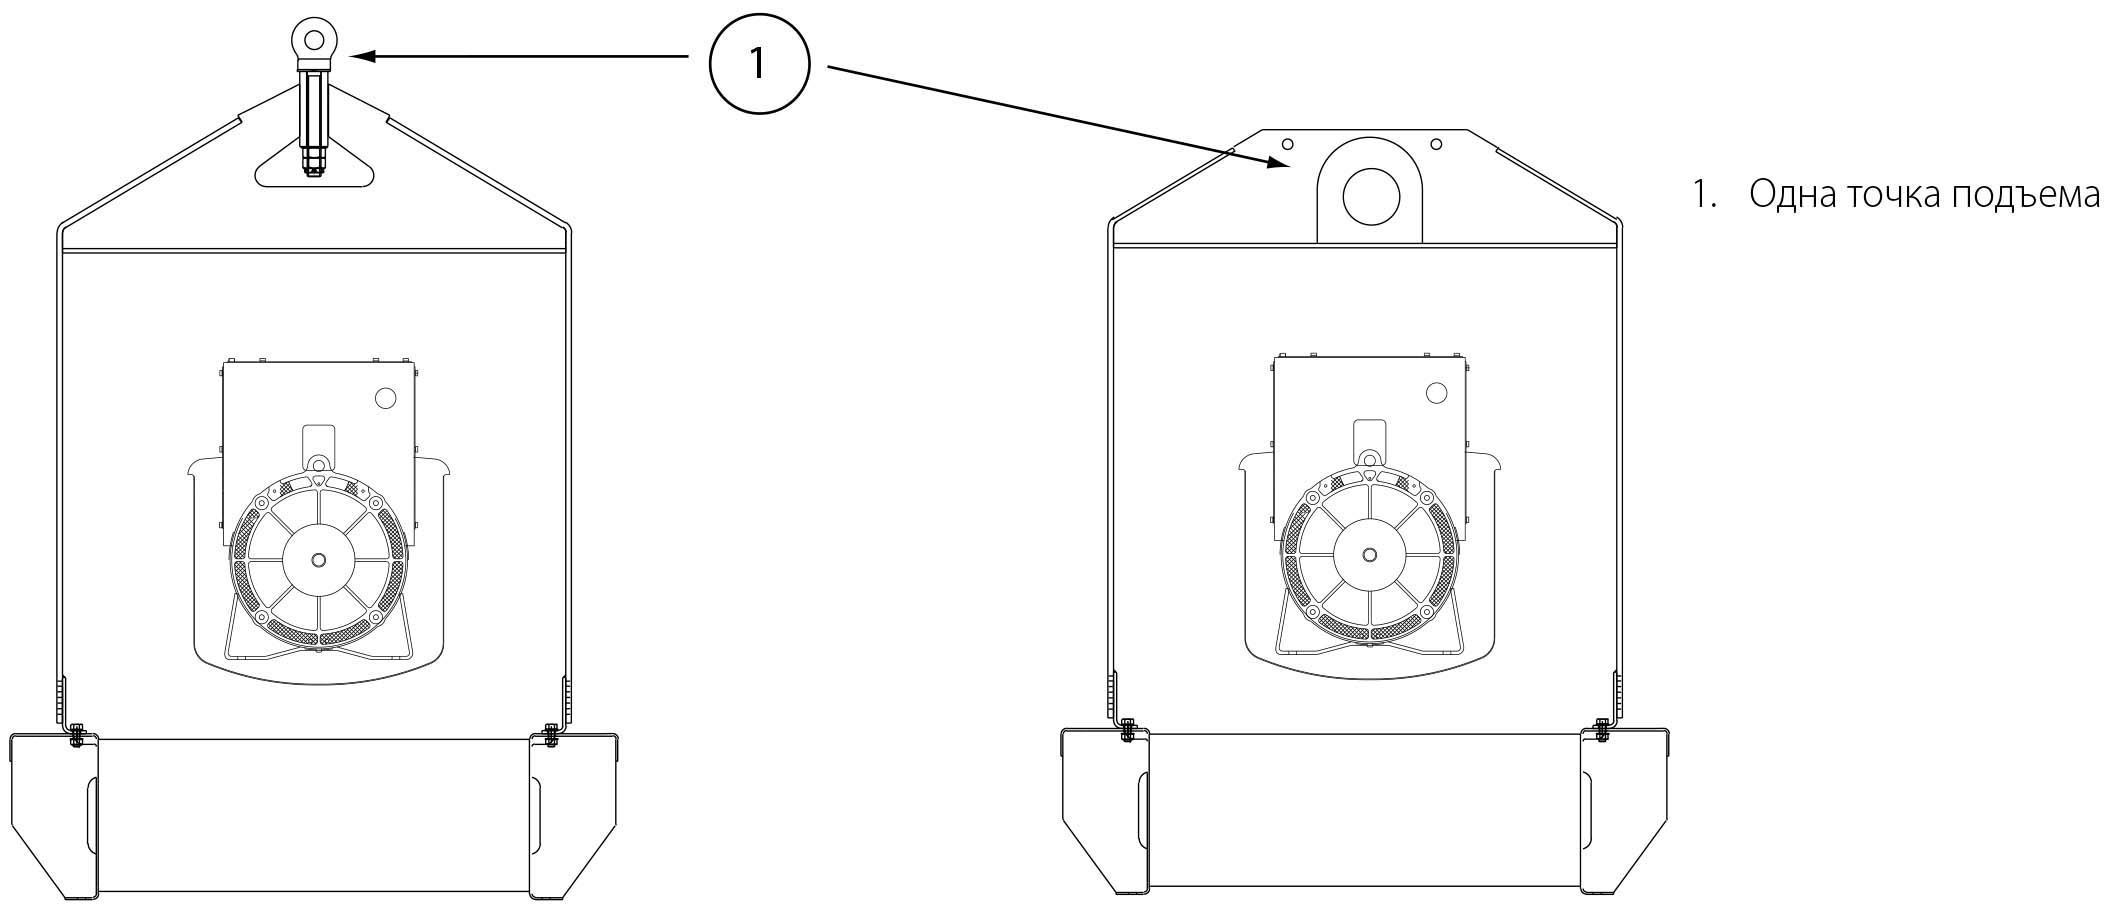 Електрогенератор - приклад підйому за одна точку